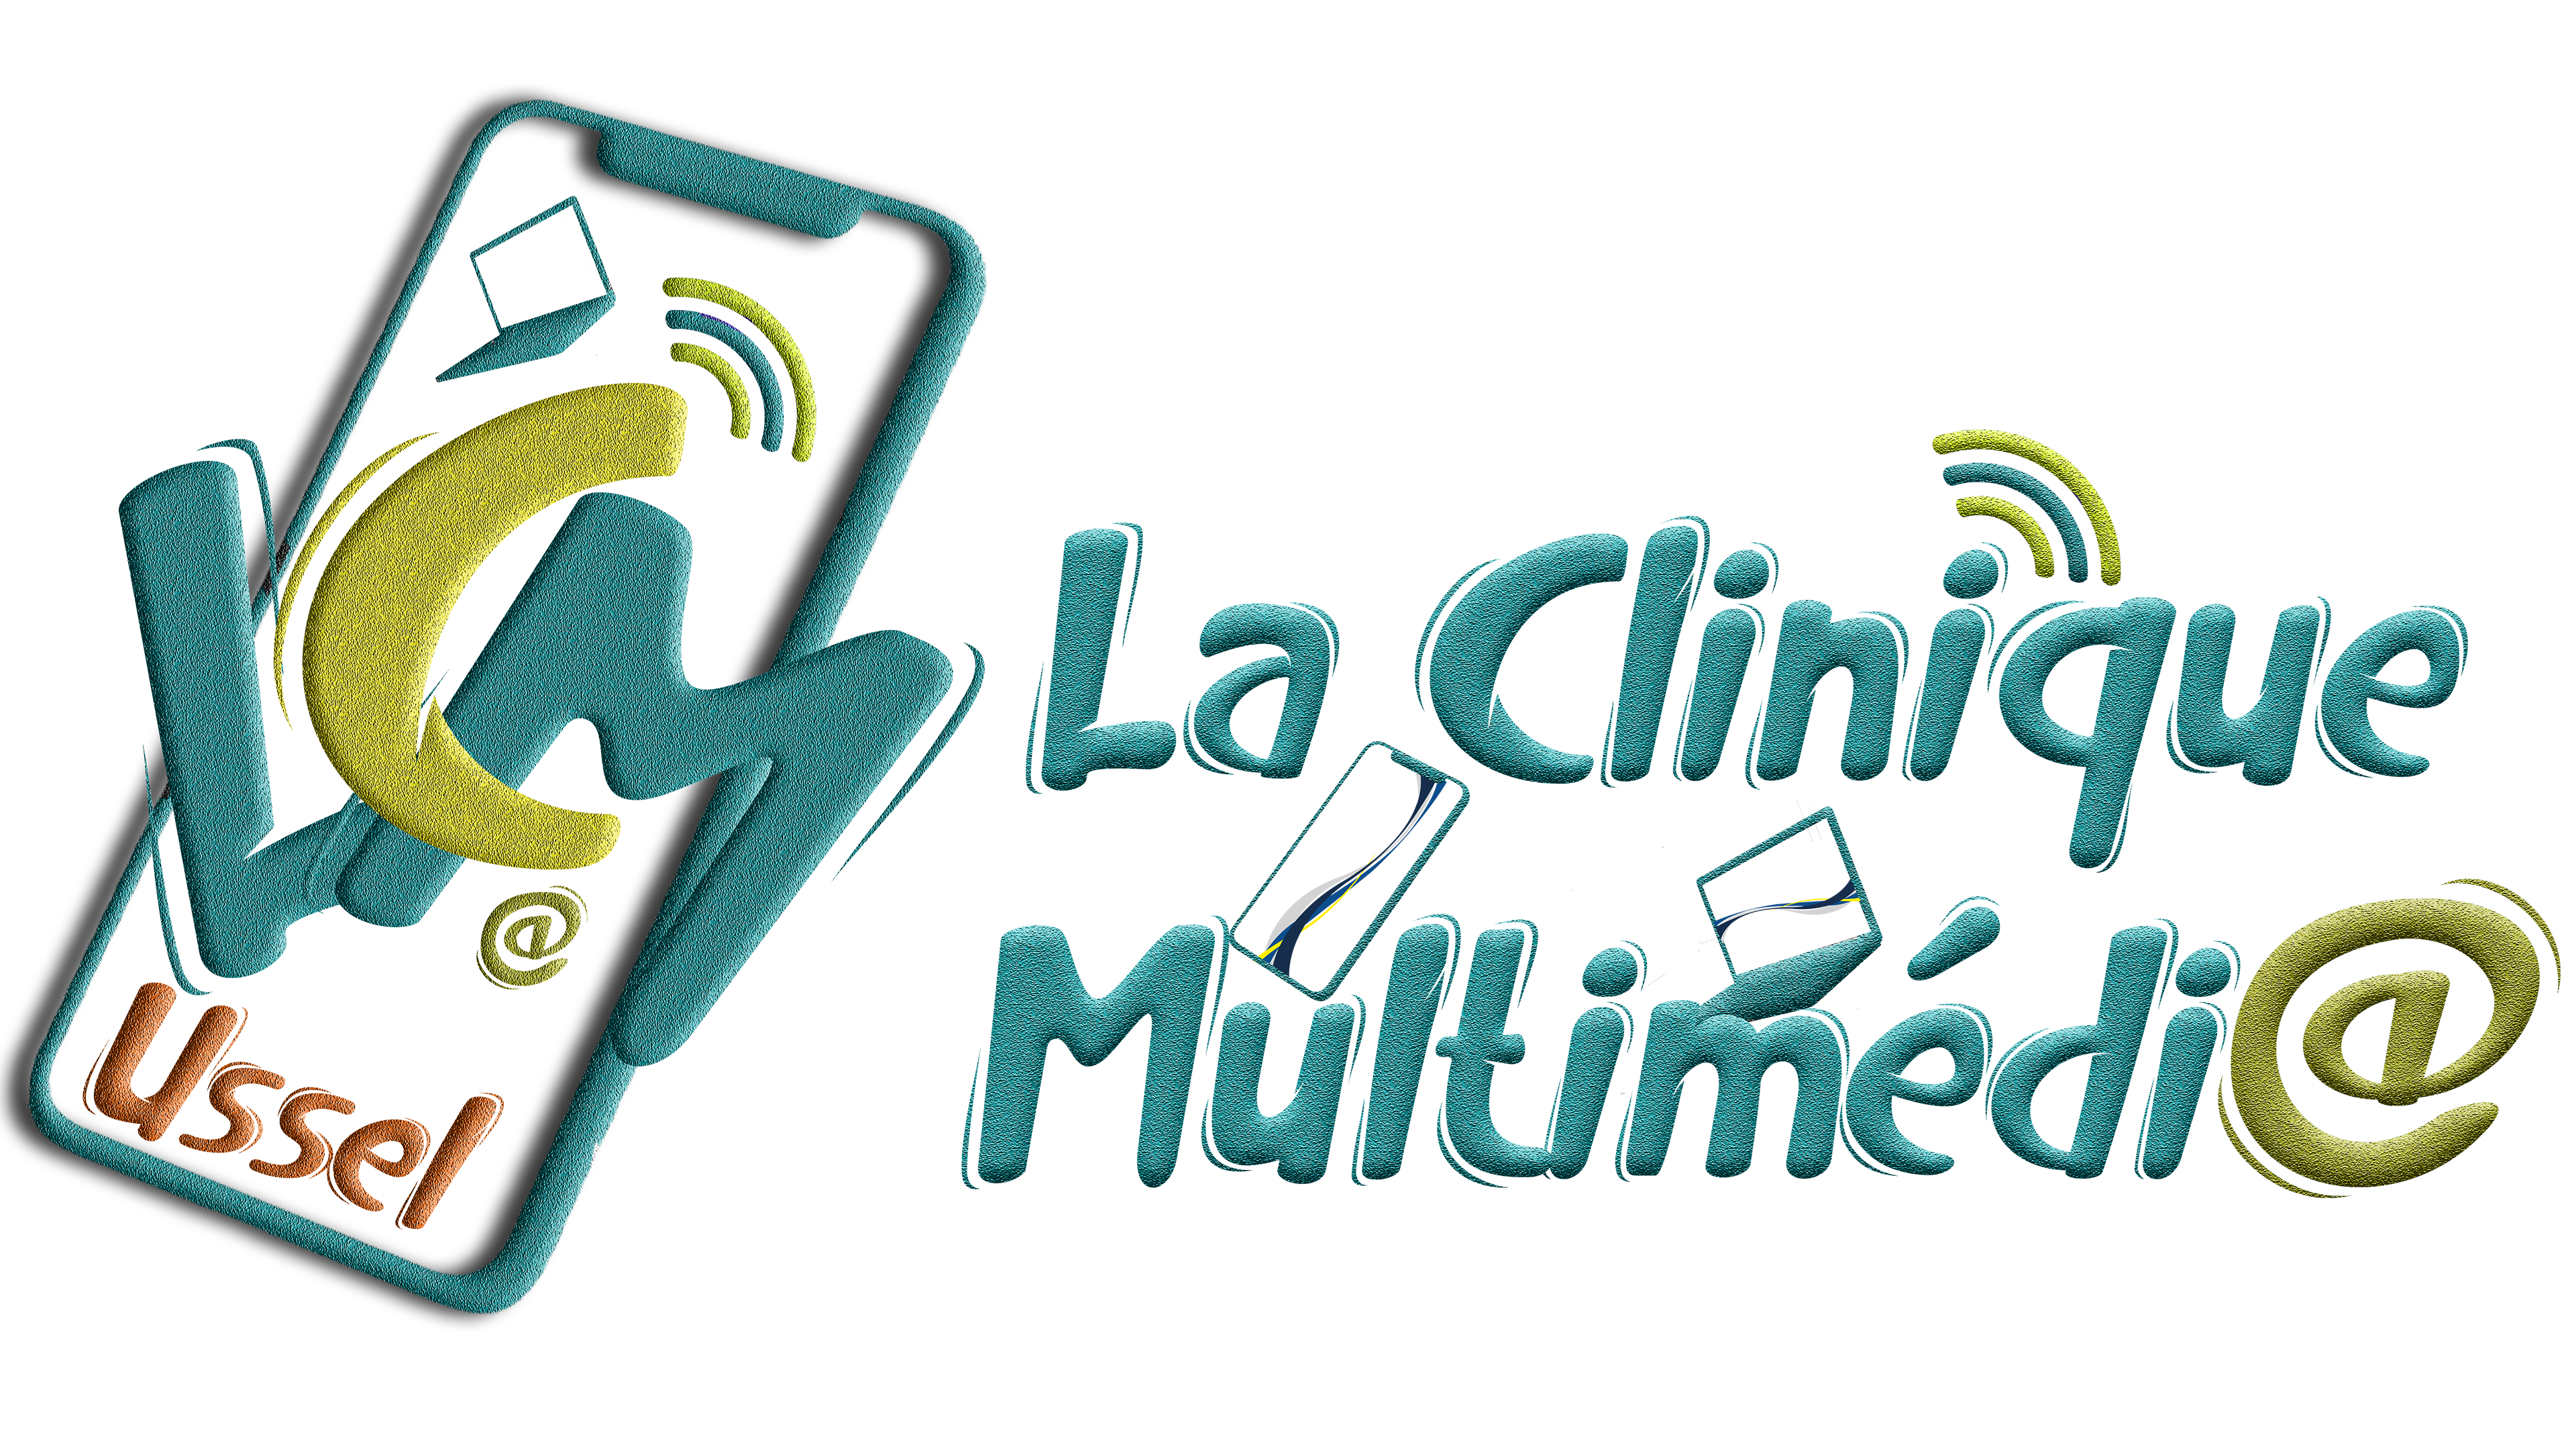 La Clinique Des Smartphones & Tv - REPARATION DE TOUT PROBLEME SUR